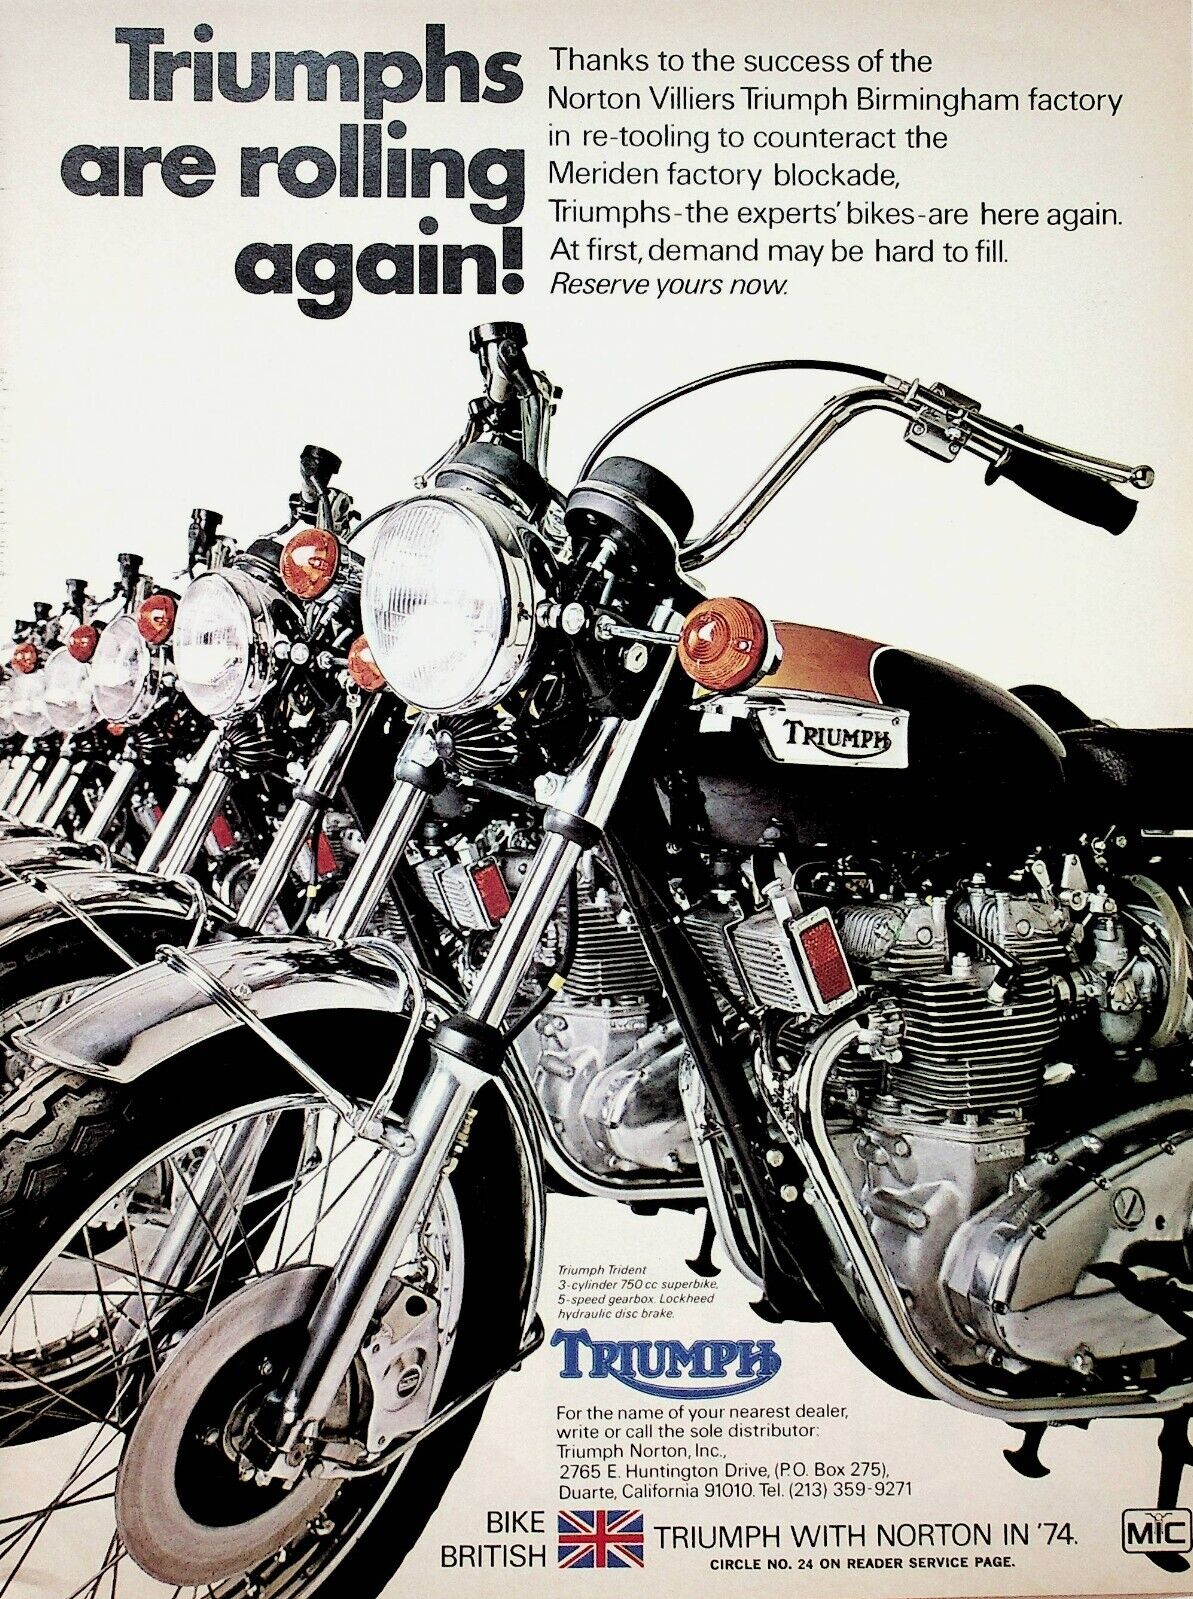 1974 Triumph Trident Meriden Factory Blockade - Vintage Motorcycle Ad